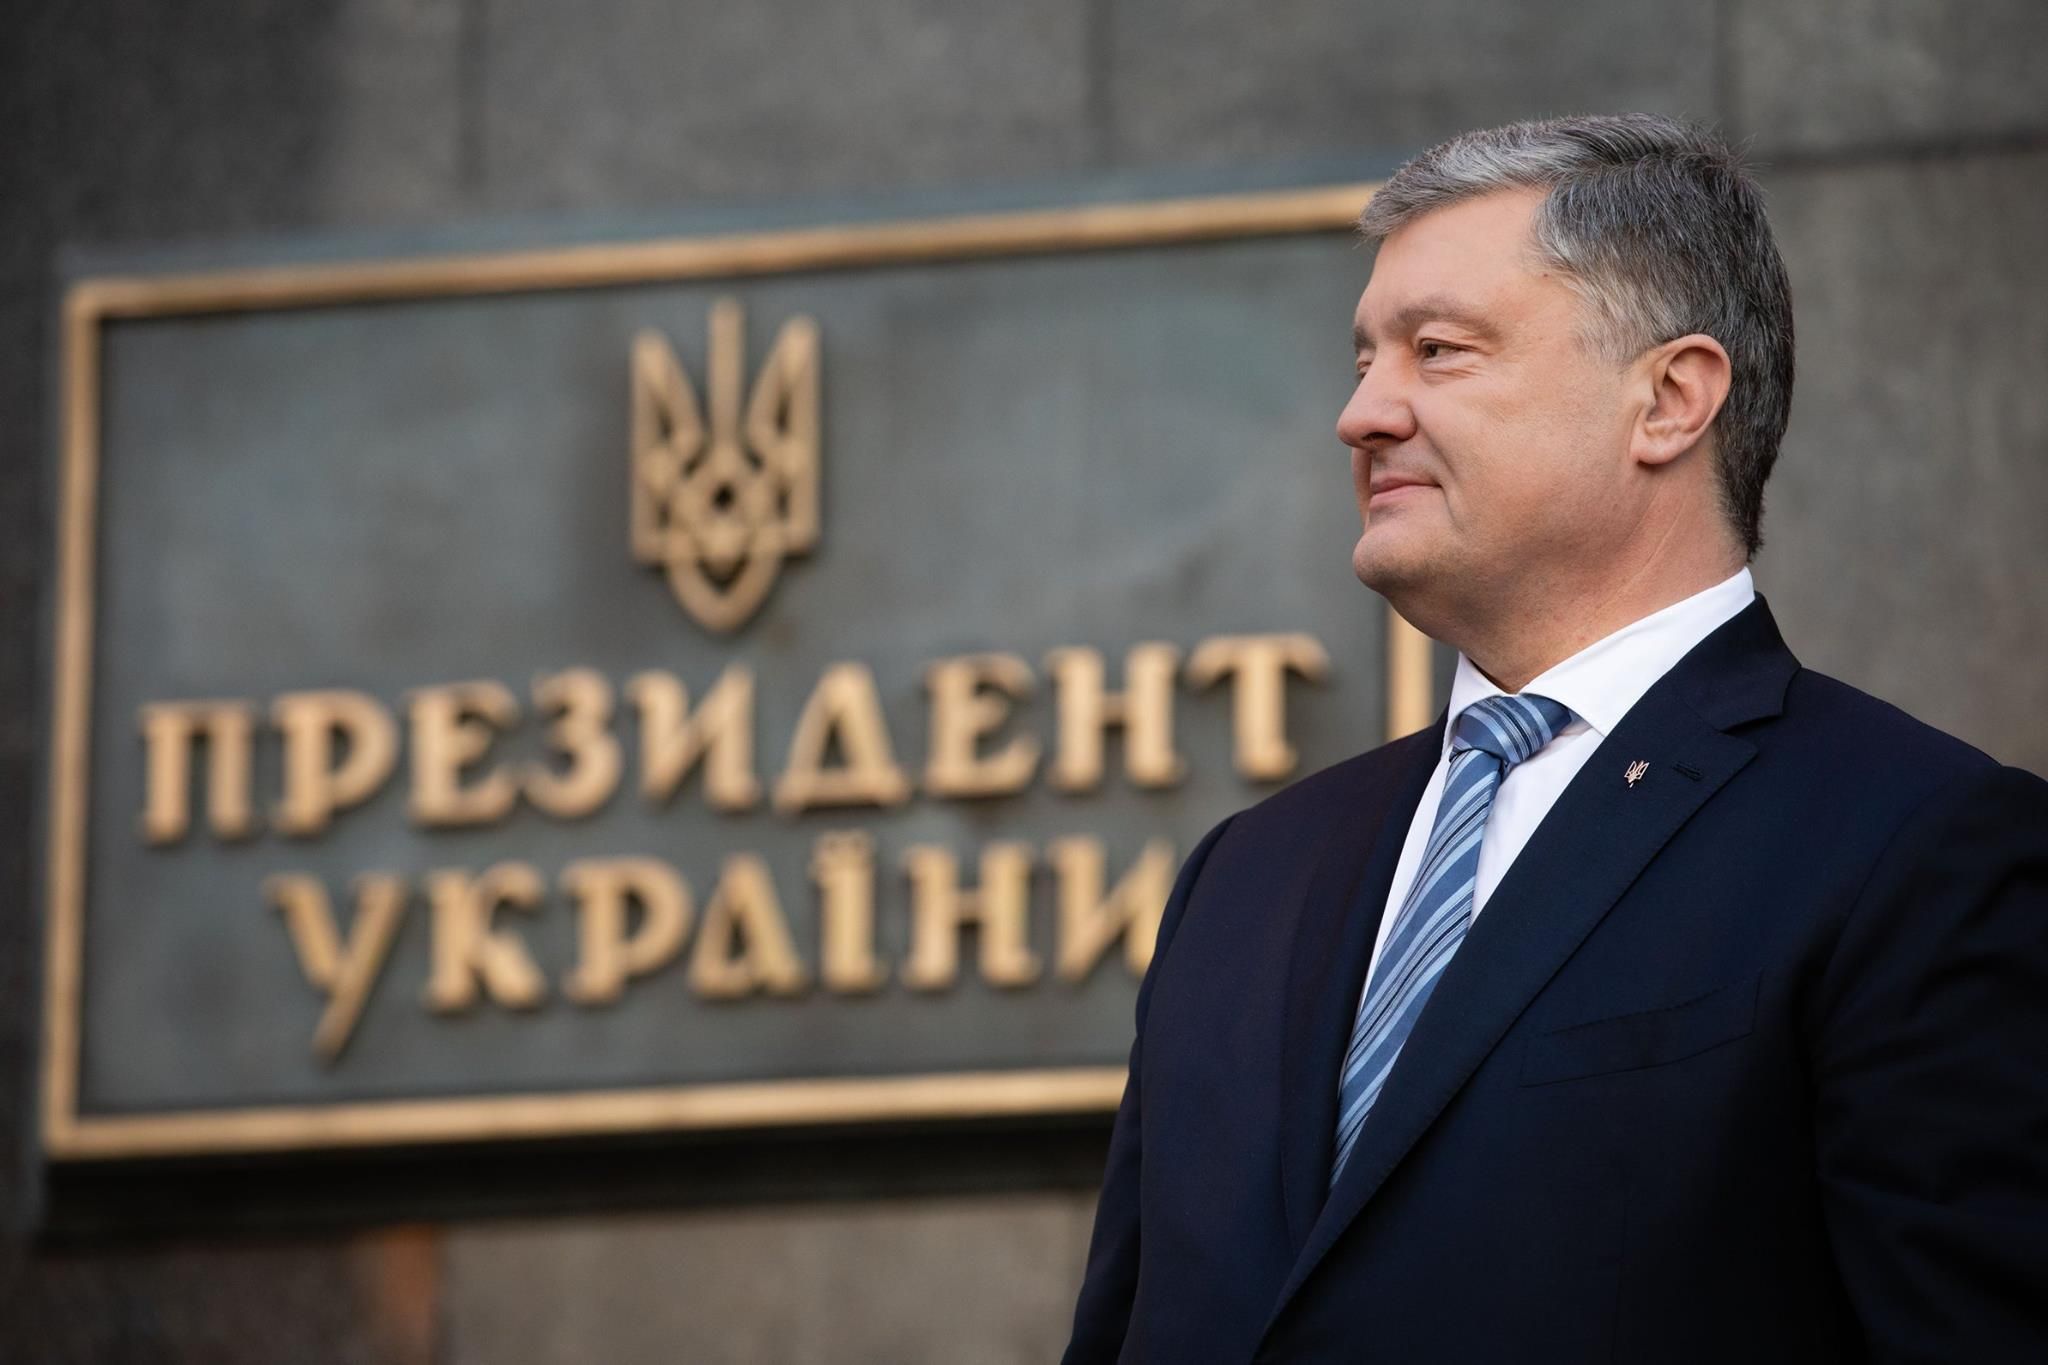 Останні заяви президента Порошенка: завдання України та боротьба проти Росії